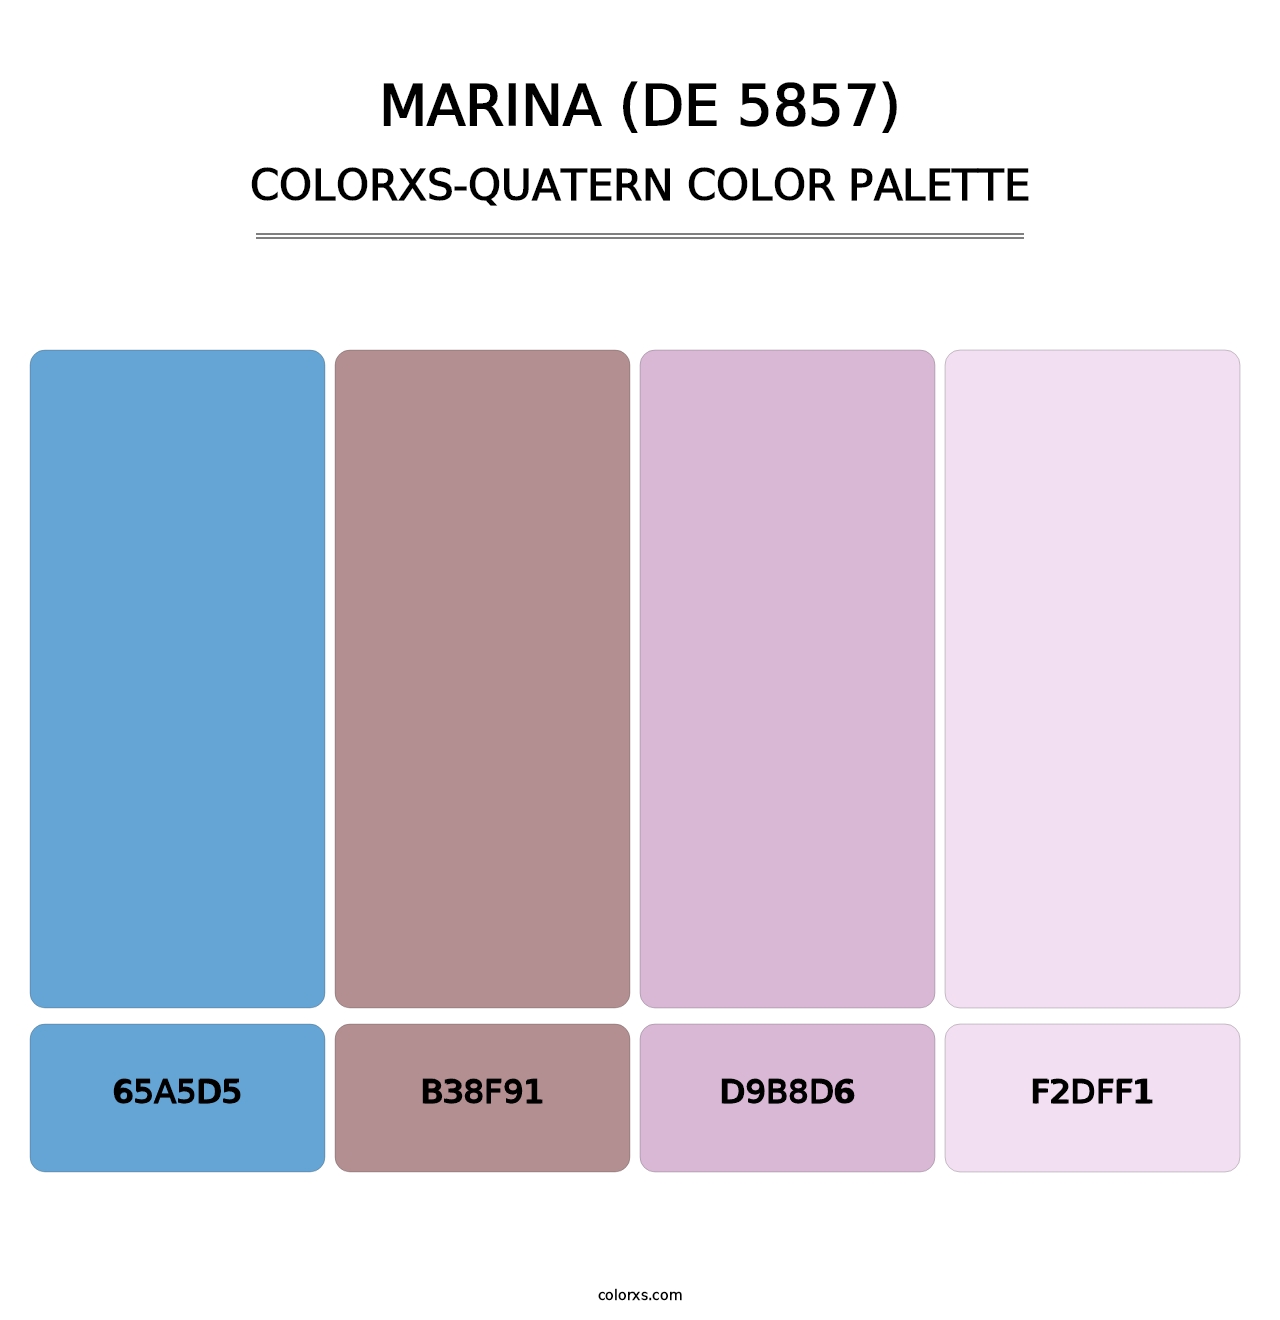 Marina (DE 5857) - Colorxs Quatern Palette